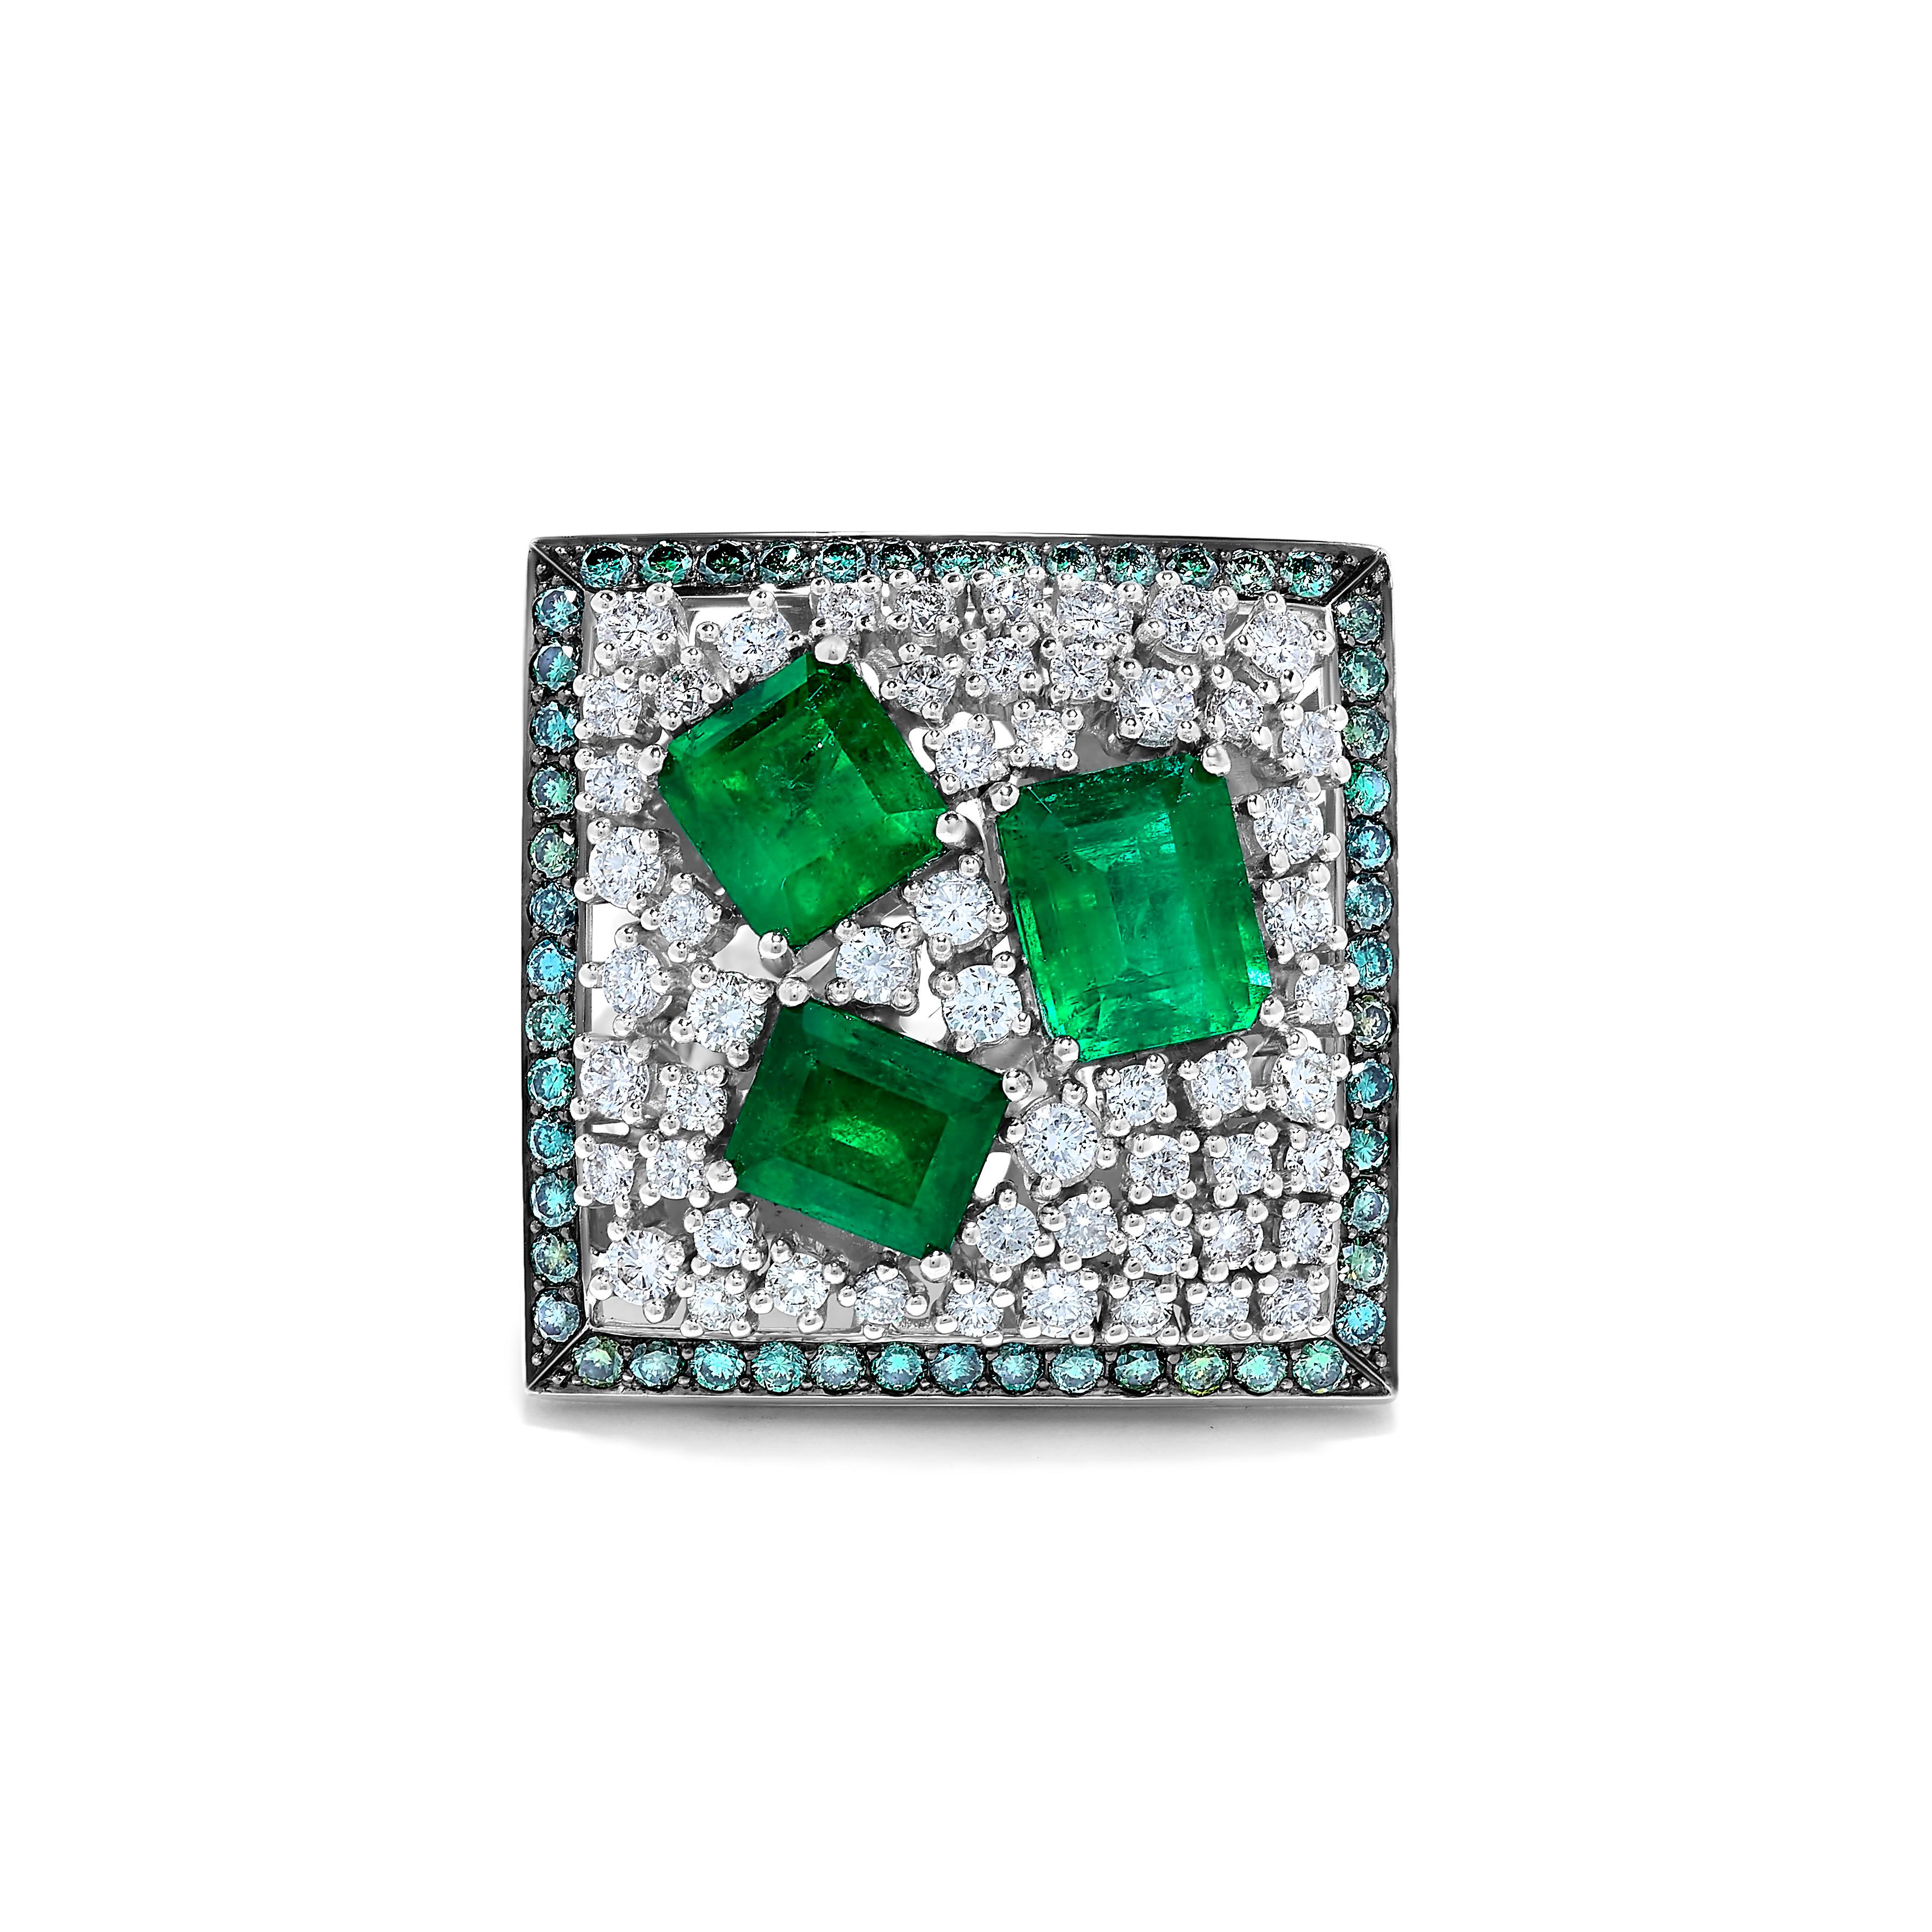 Créé par Emilio Jewelry à New York,
Une bague unique présentant les plus belles émeraudes de Colombie. 
3 pc Emeraudes 6.5 cts 
Diamants blancs 1,5 cts
Diamants de couleur fantaisie 1,5 cts 
